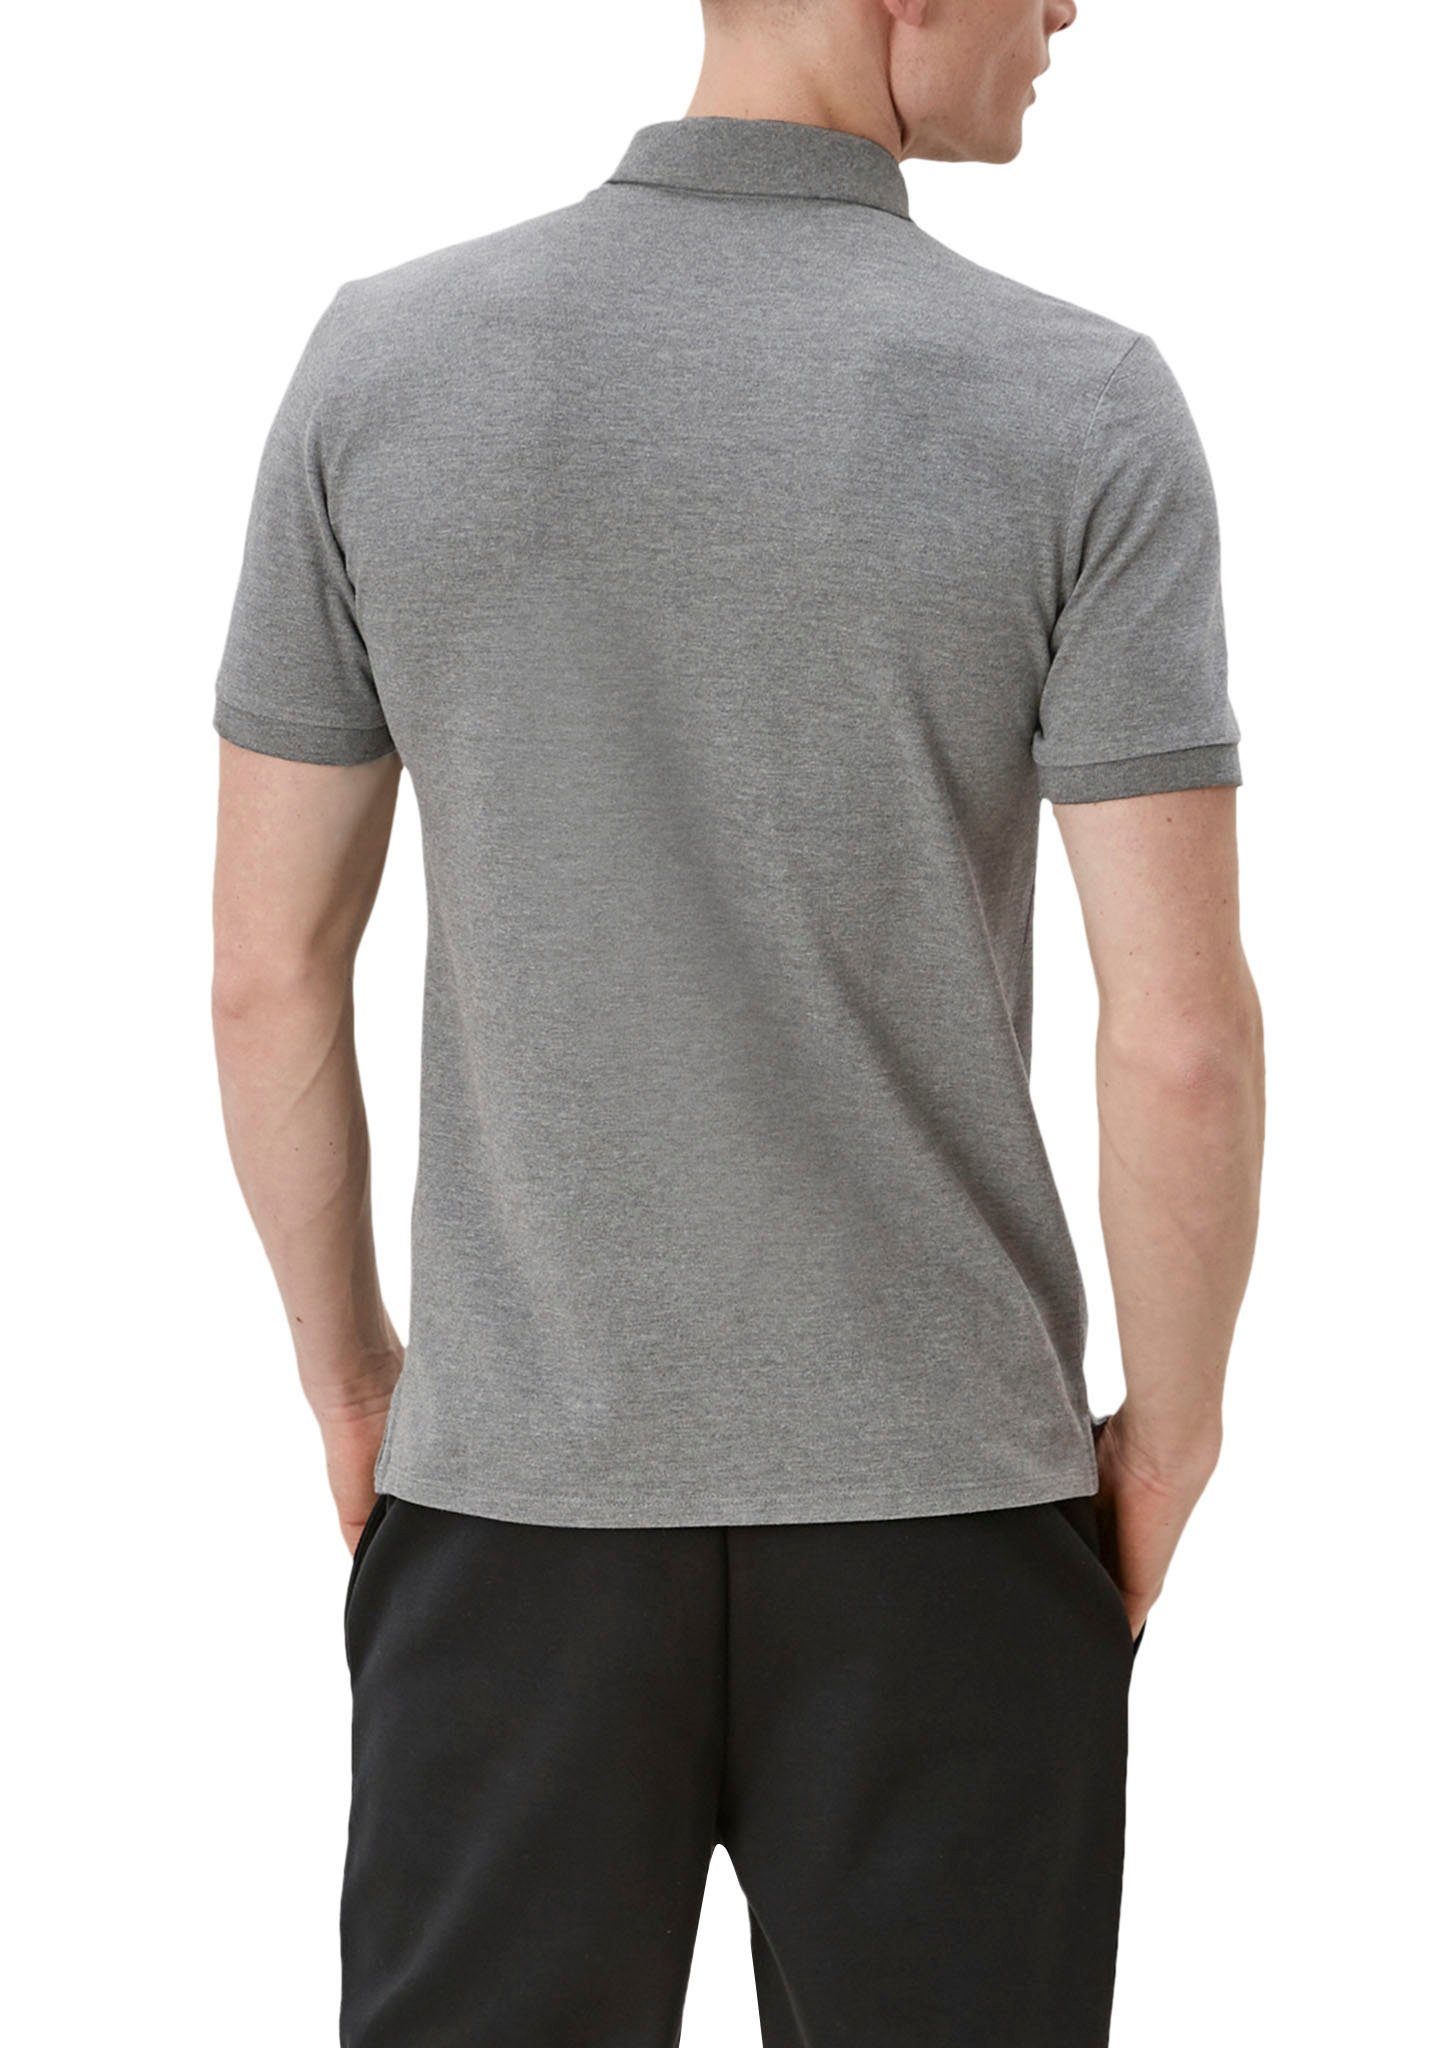 den an QS Seiten grey/black Einschnitte Poloshirt